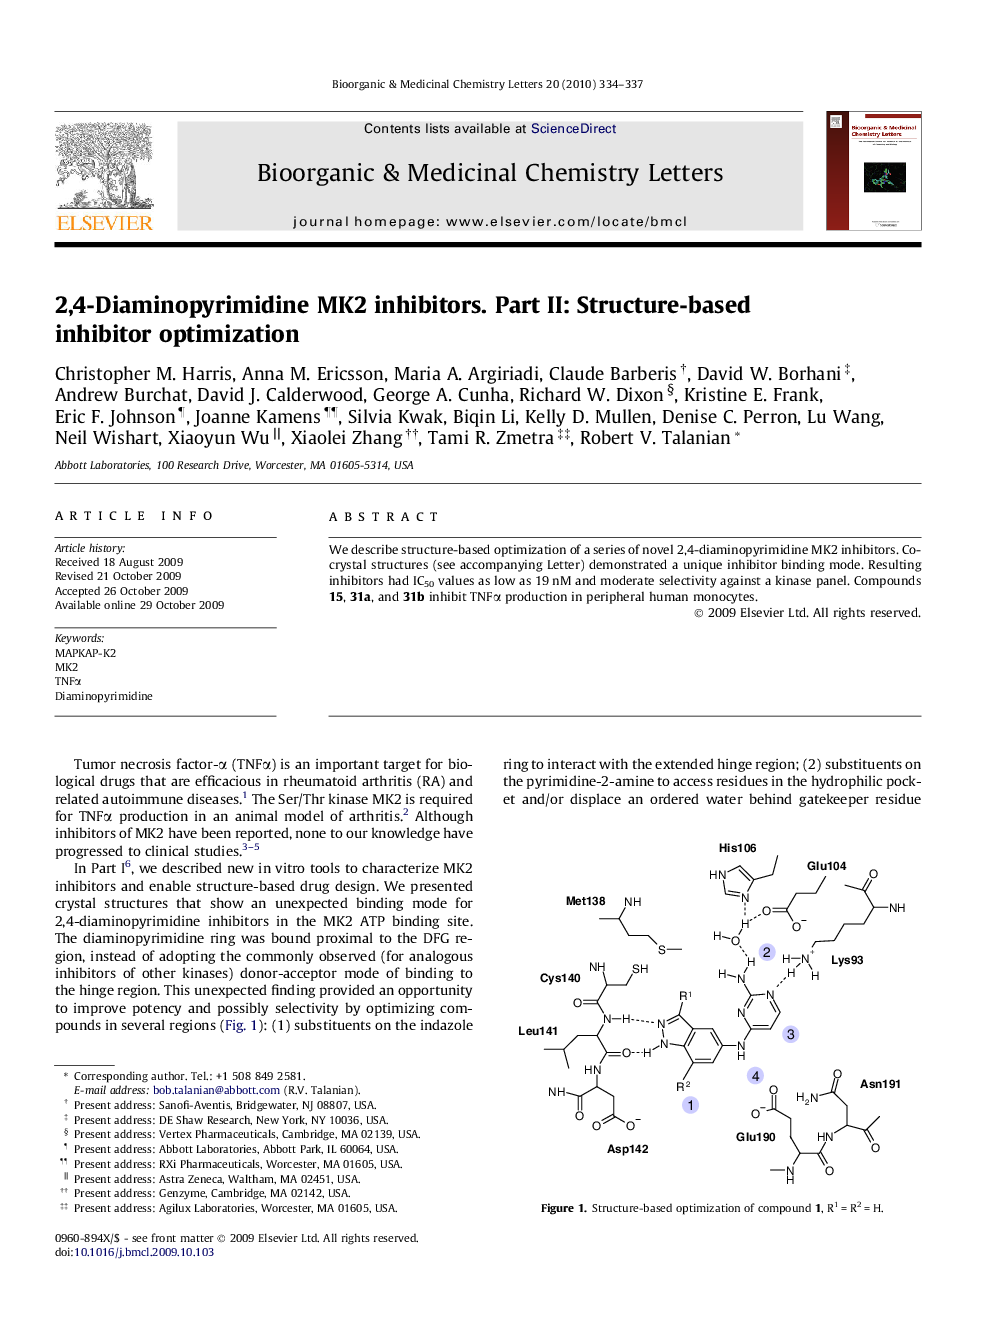 2,4-Diaminopyrimidine MK2 inhibitors. Part II: Structure-based inhibitor optimization